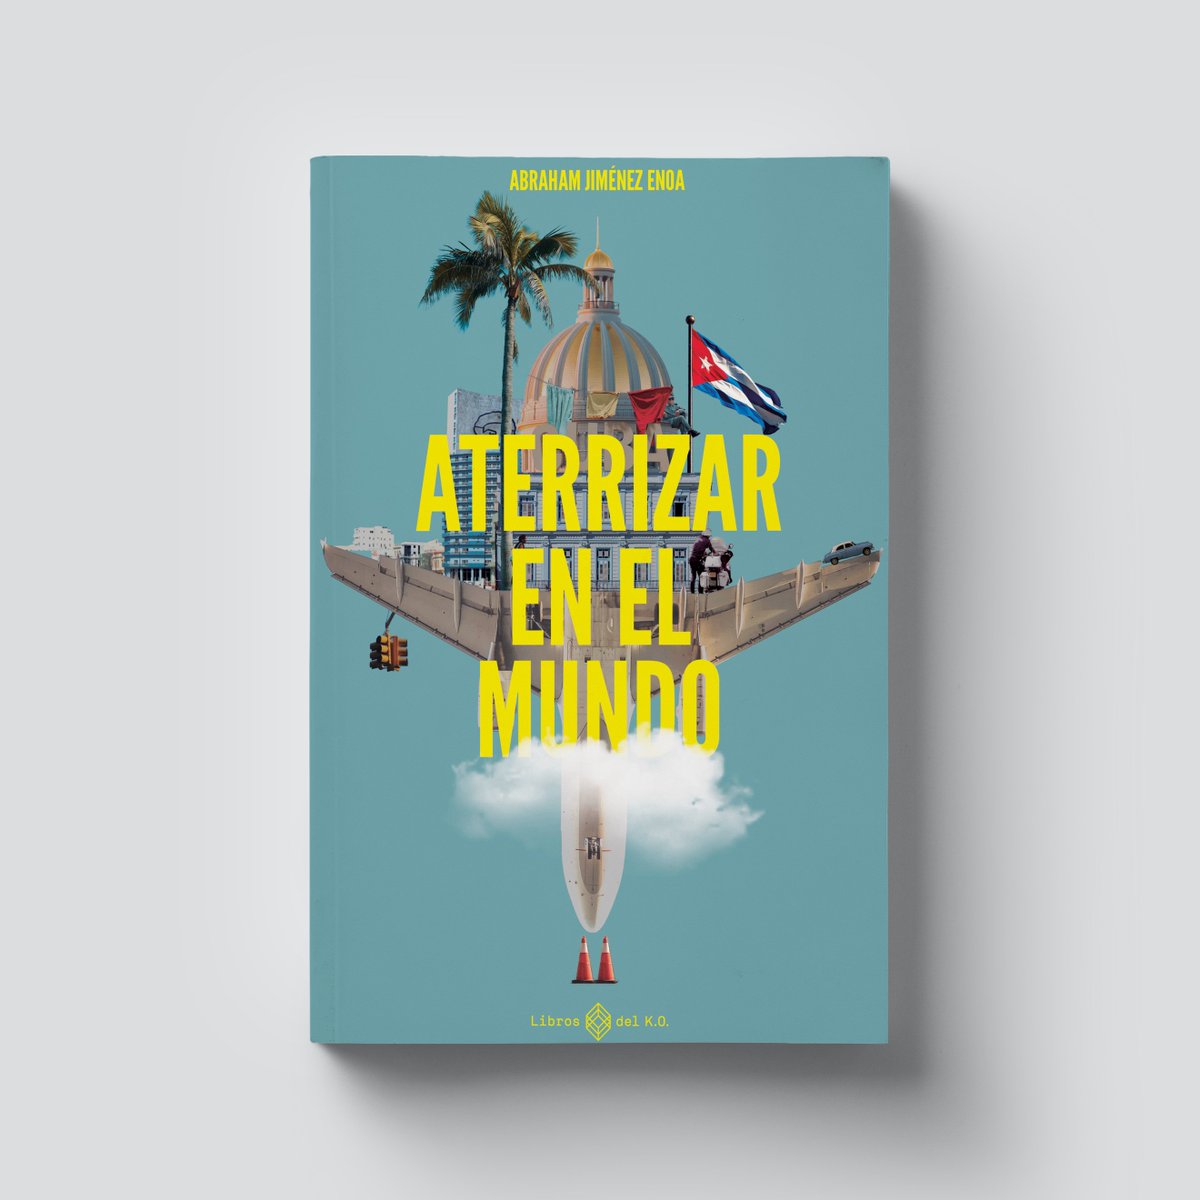 🇨🇺El 4 de marzo publicamos 'Aterrizar en el mundo', de @JimenezEnoa, la obra que sucede a 'La isla oculta', y en la que explica cómo fue salir de Cuba por primera vez y aterrizar en el mundo capitalista, con sus luces y sus sombras. librosdelko.com/products/aterr…